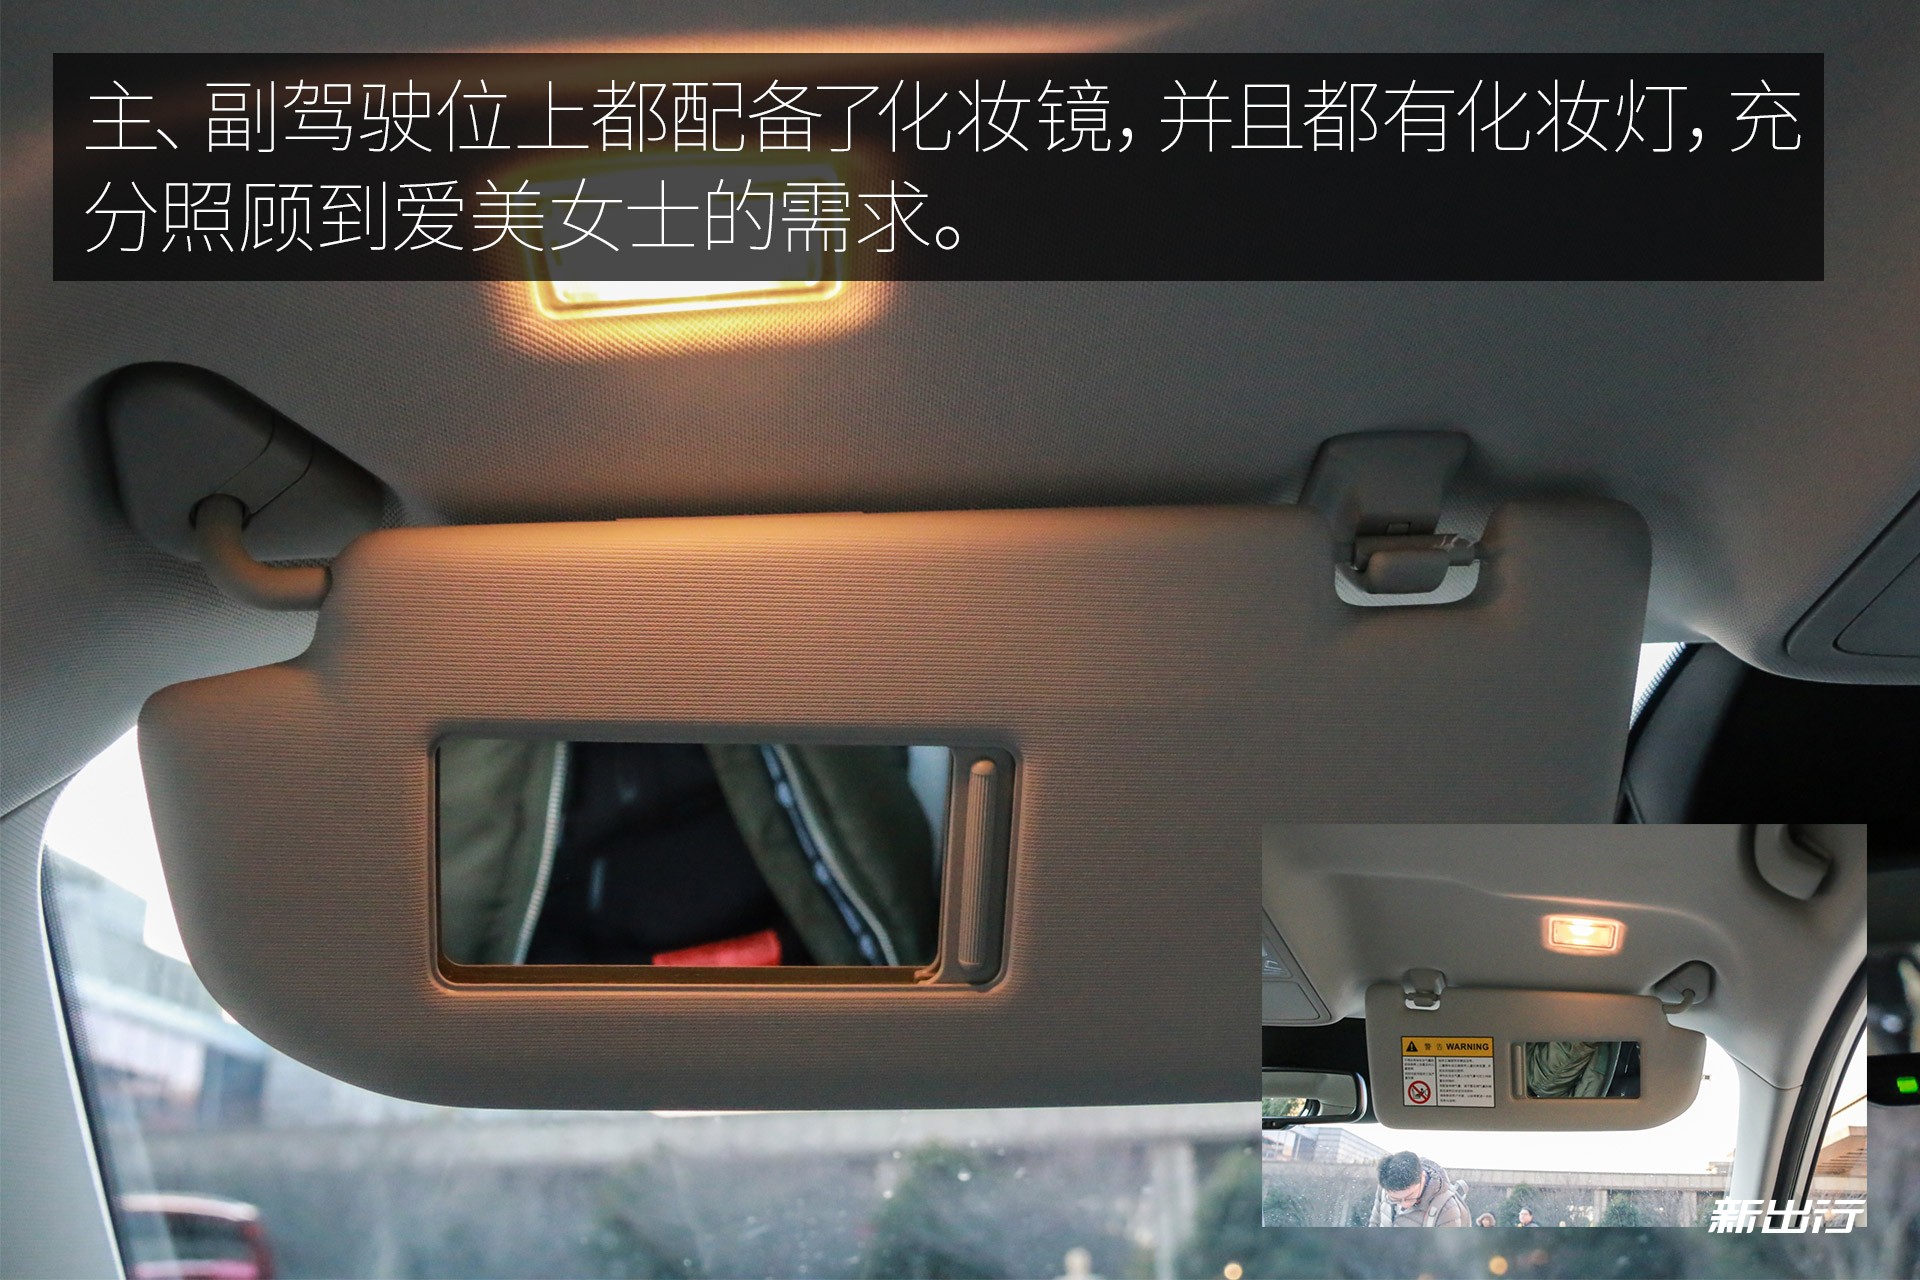 实拍全球首款纯电动休旅车荣威 Ei5 美得让人心动